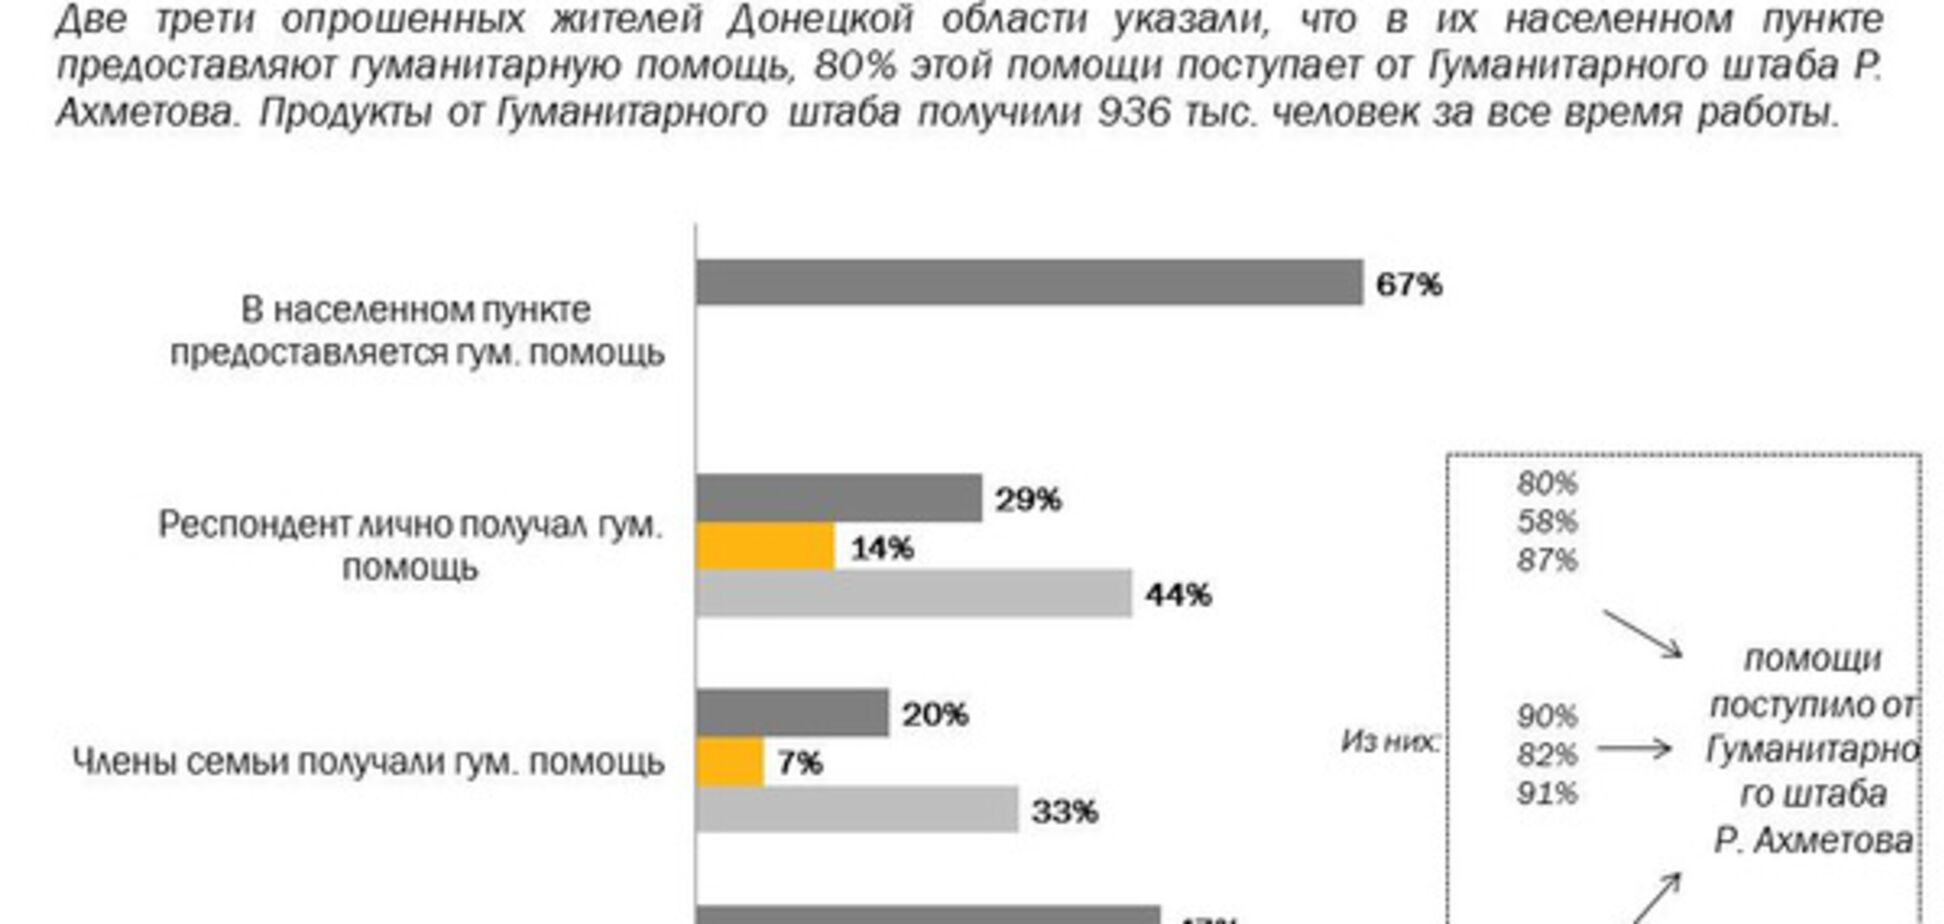 КМИС: две трети жителей Донецкой области обеспечены гумпомощью